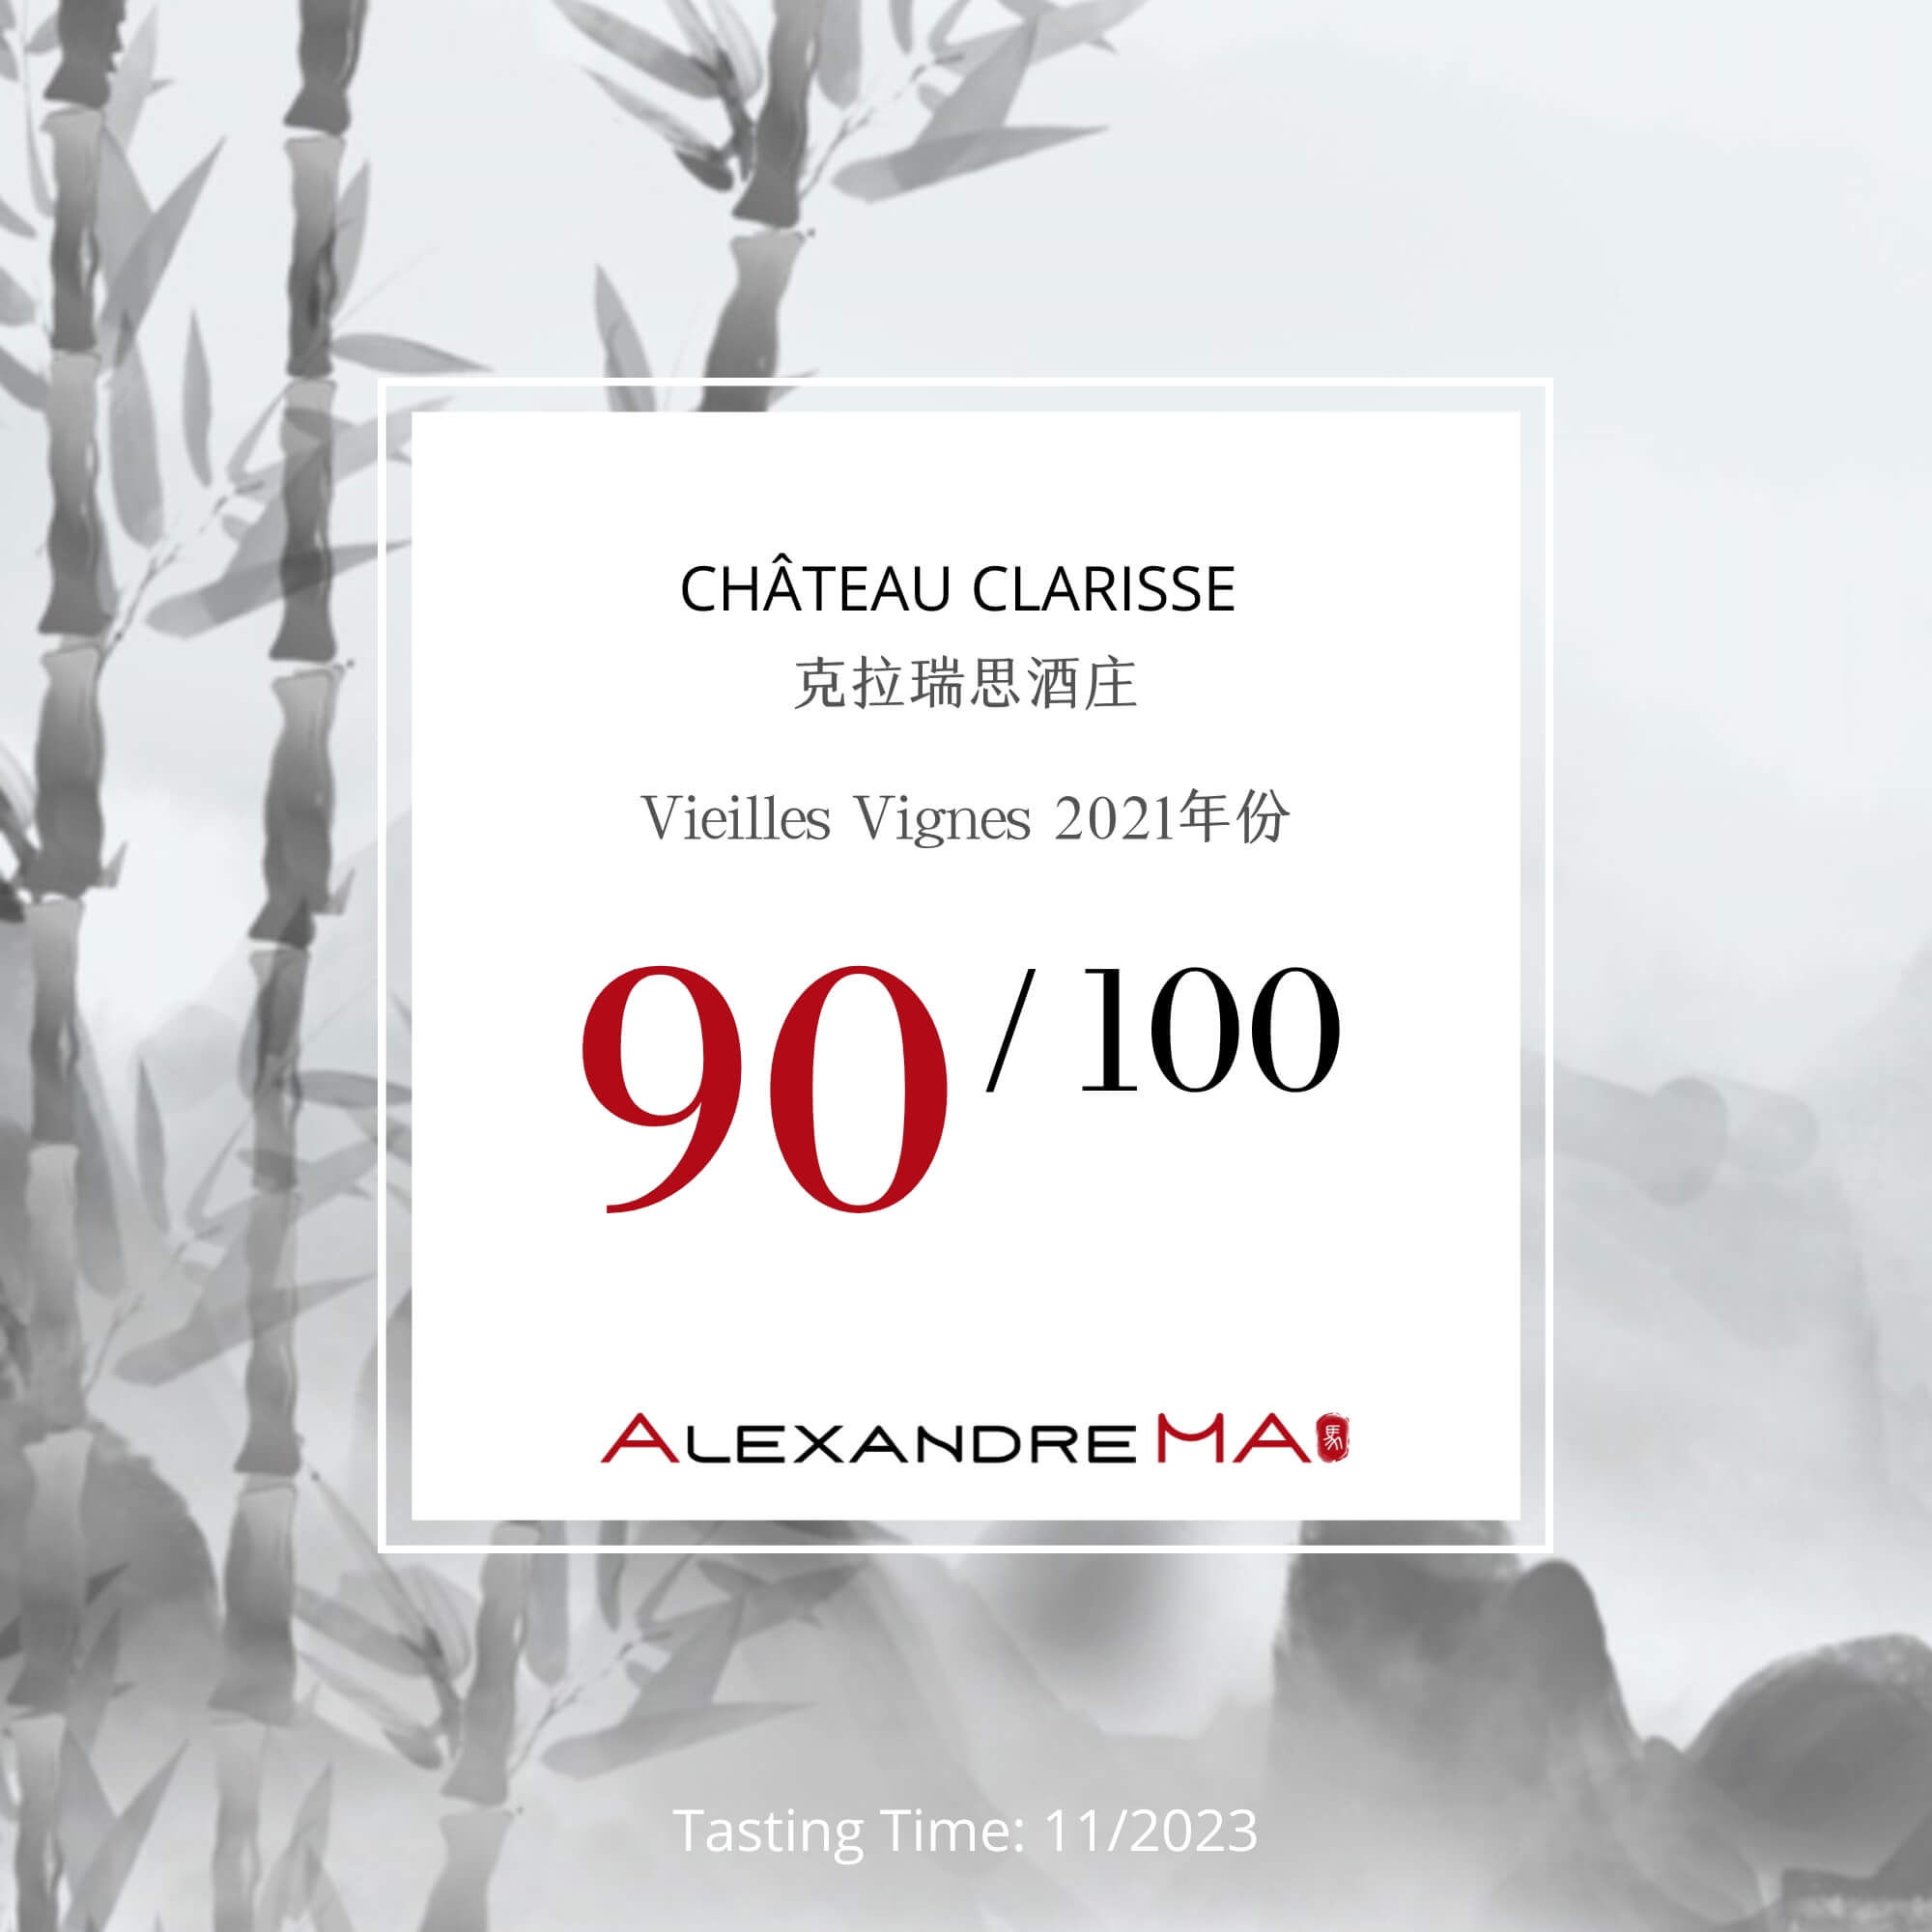 Château Clarisse 2021 克拉瑞斯酒庄 – Vieilles Vignes - Alexandre Ma